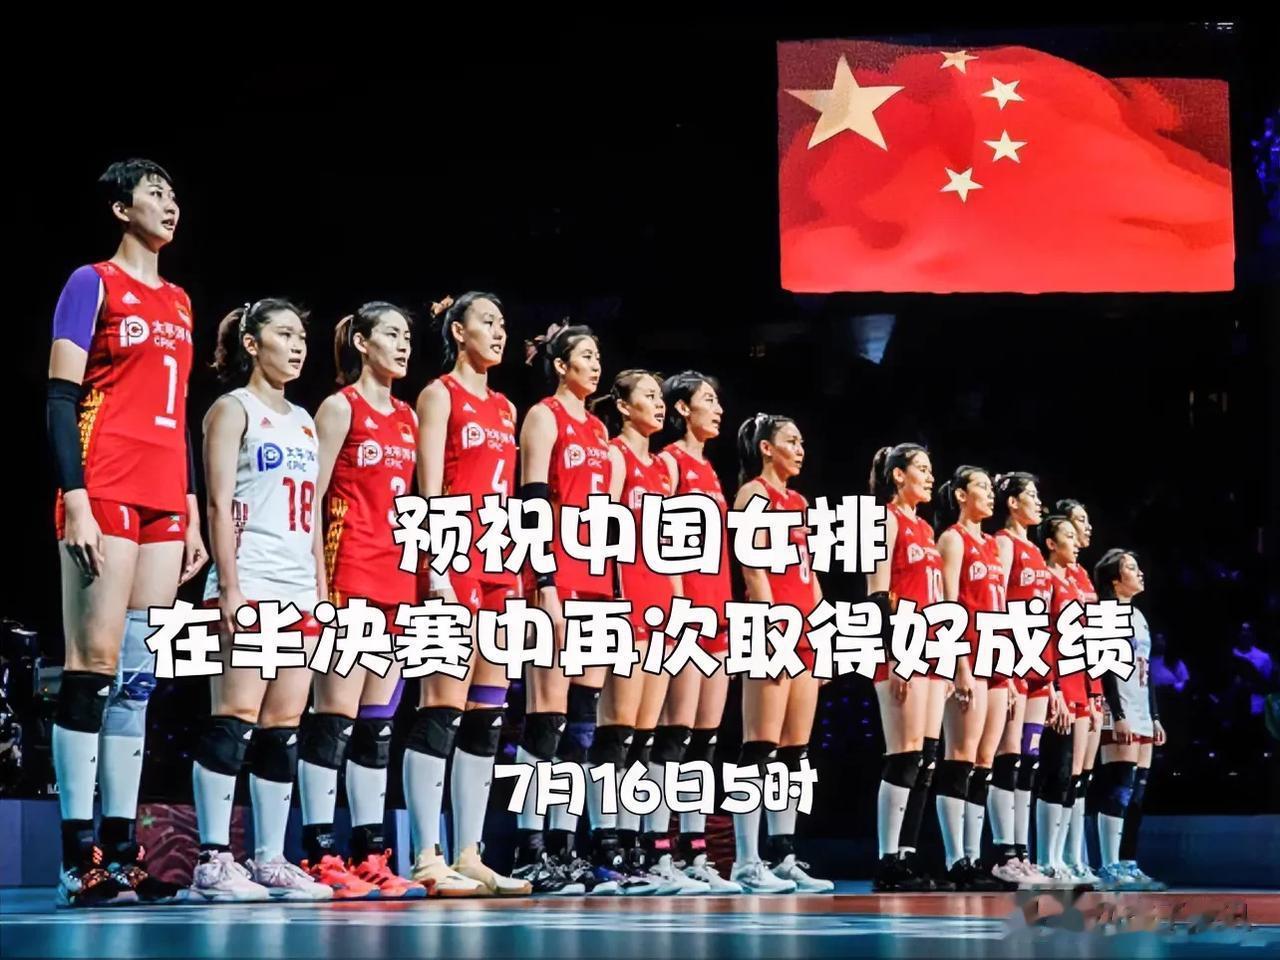 预祝中国女排在世联赛半决赛中取得好成绩

         今天凌晨，中国女排在(1)